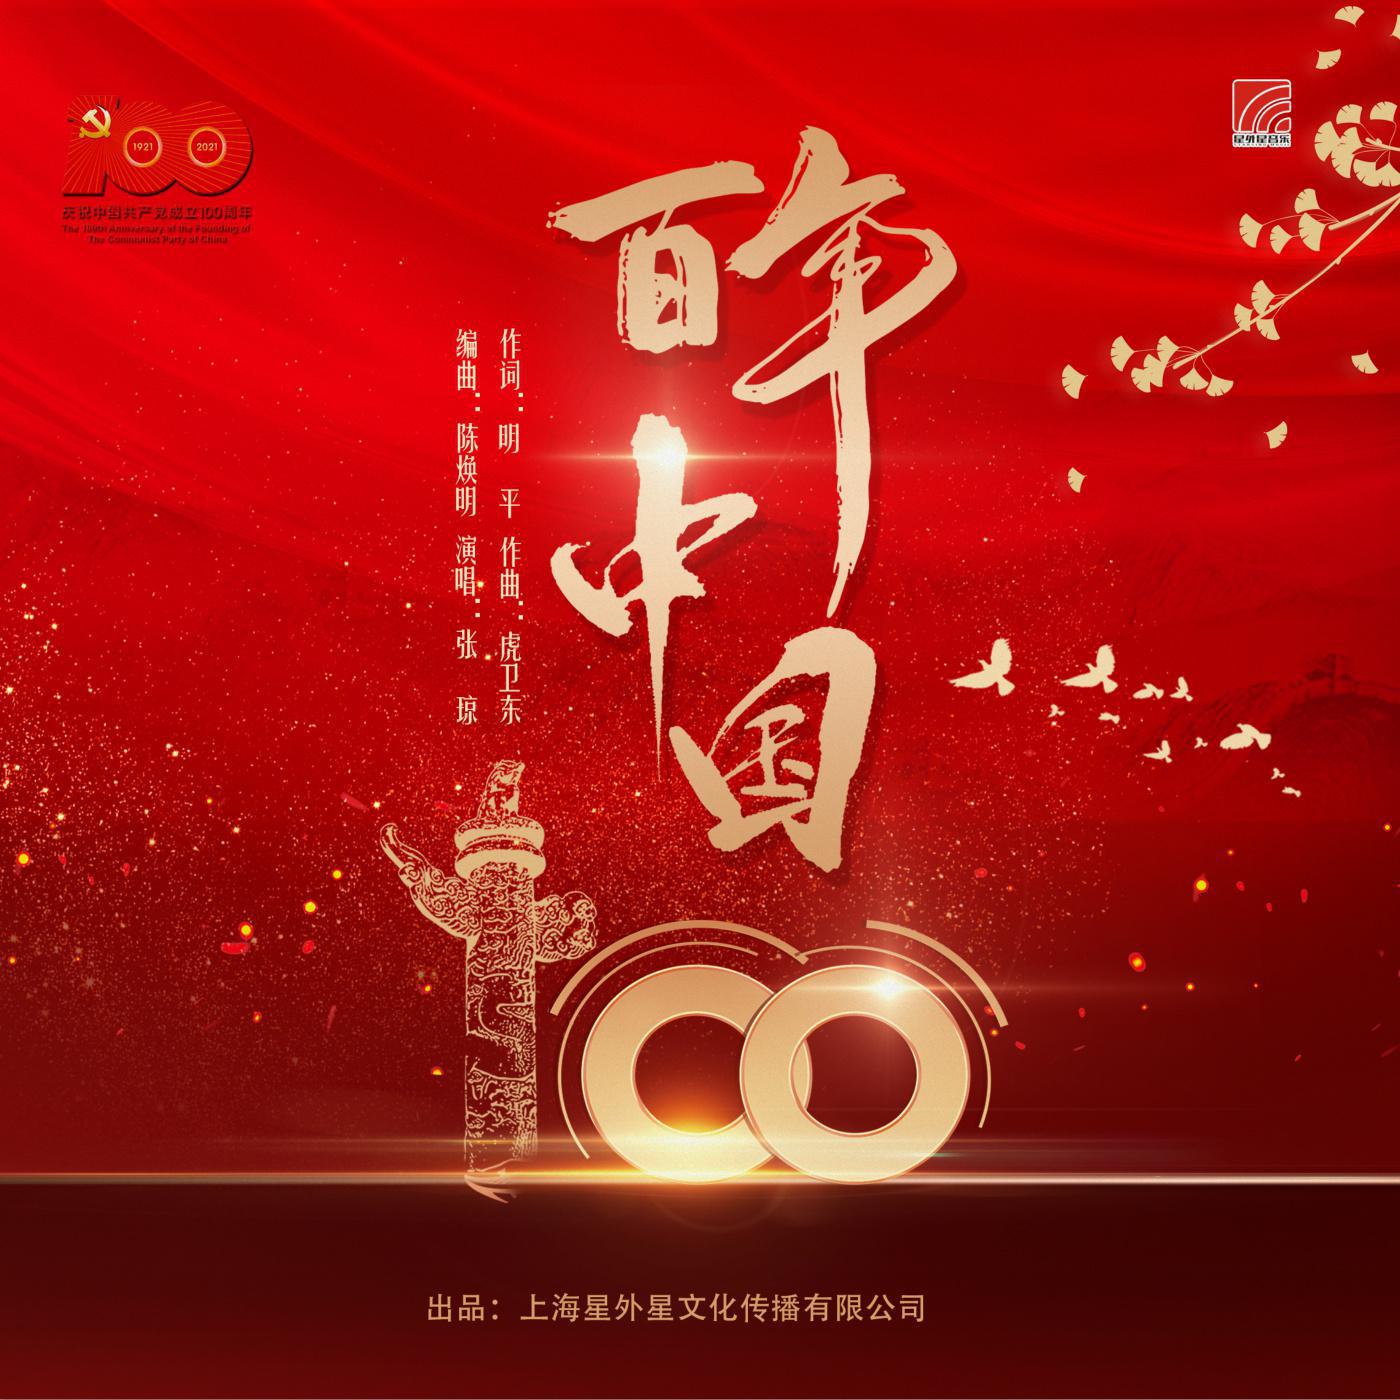 百年中国歌词 歌手张琼-专辑百年中国-单曲《百年中国》LRC歌词下载